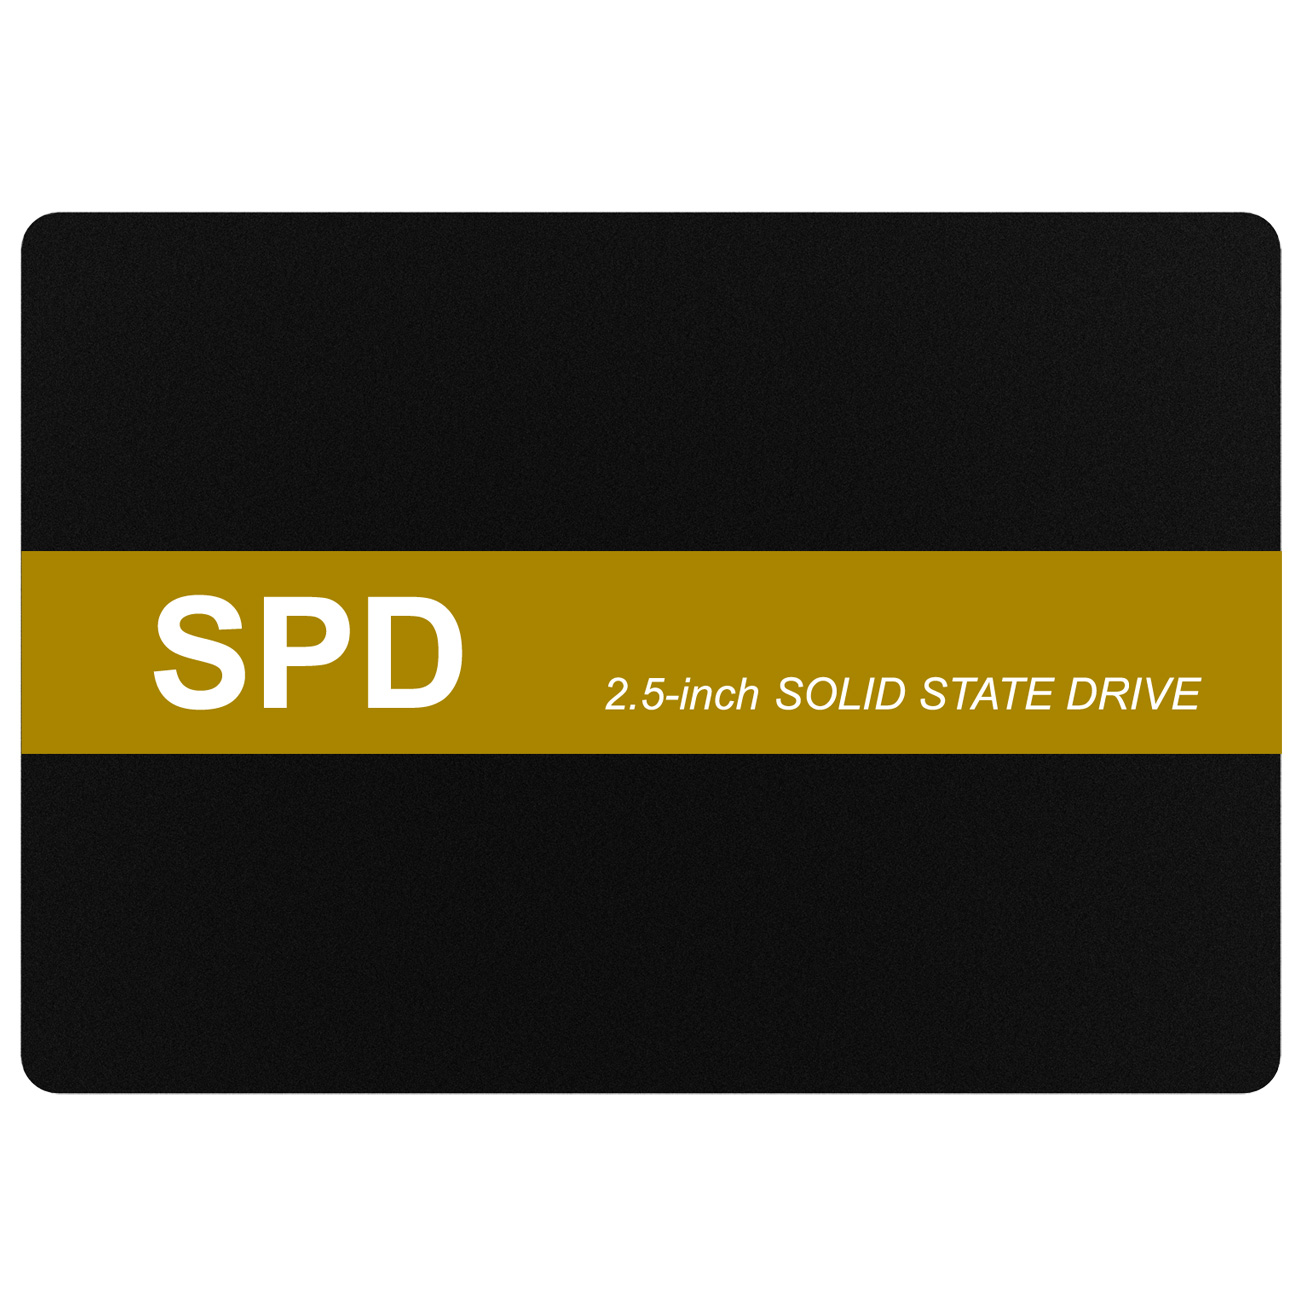 【SSD 512GB】SPD SQ300-SC512GD w/USB変換ケーブル